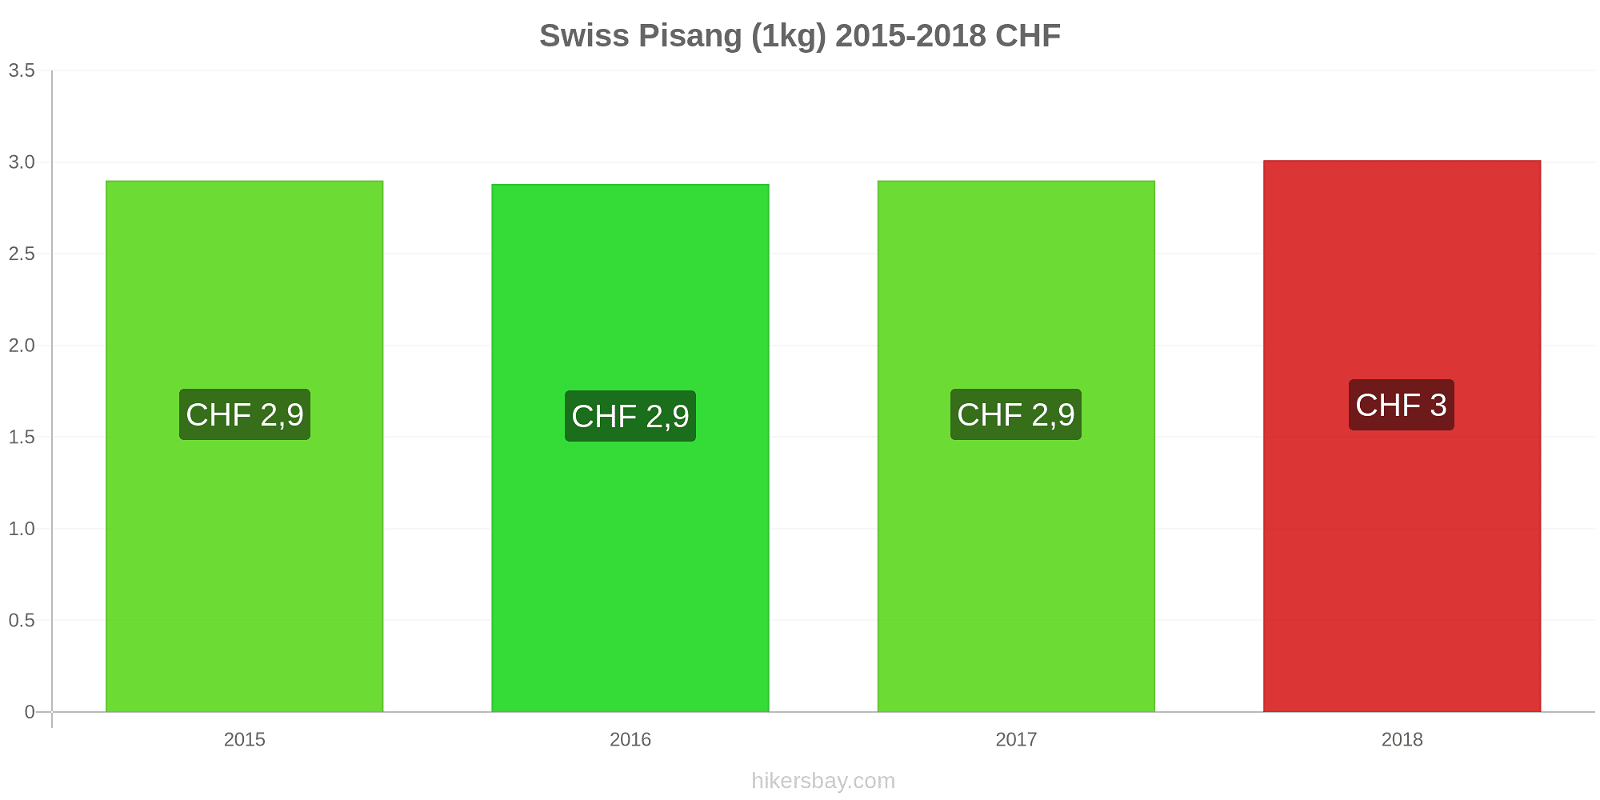 Swiss perubahan harga Pisang (1kg) hikersbay.com